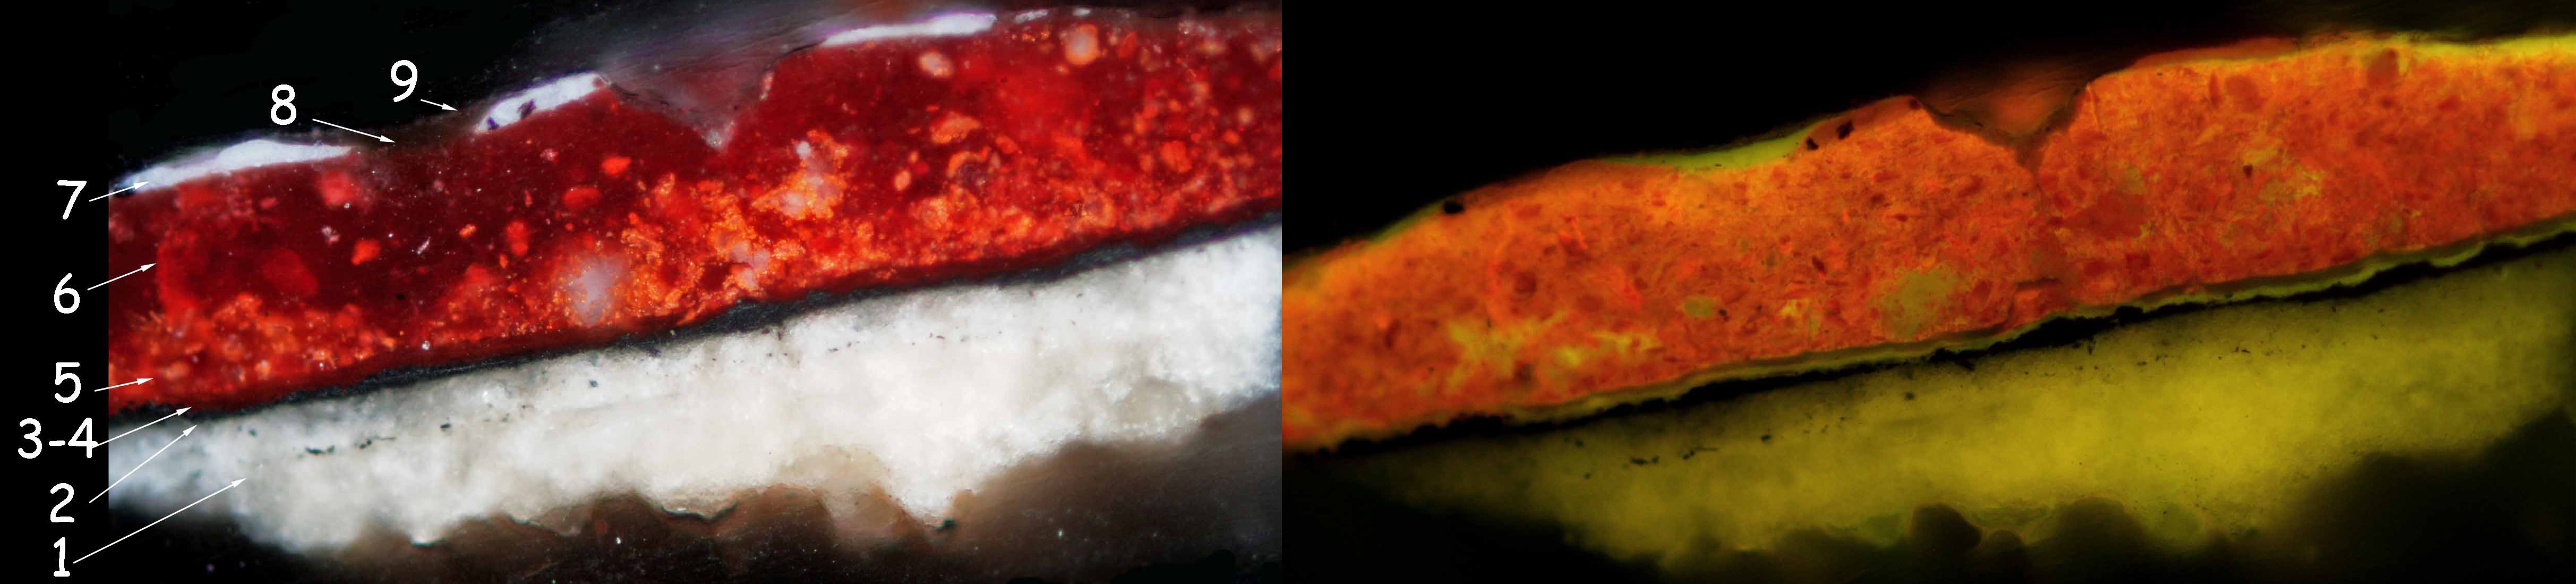 figure 3 : Coupe stratigraphique 16446 de la polychromie de la robe du personnage, panneau dextre (Triptyque : L’adoration des Mages, C2RMF68184) au microscope optique en lumière naturelle (à gauche) et sous lumière filtrée, filtre B2/A (à droite) (©C2RMF, Yannick Vandenberghe).